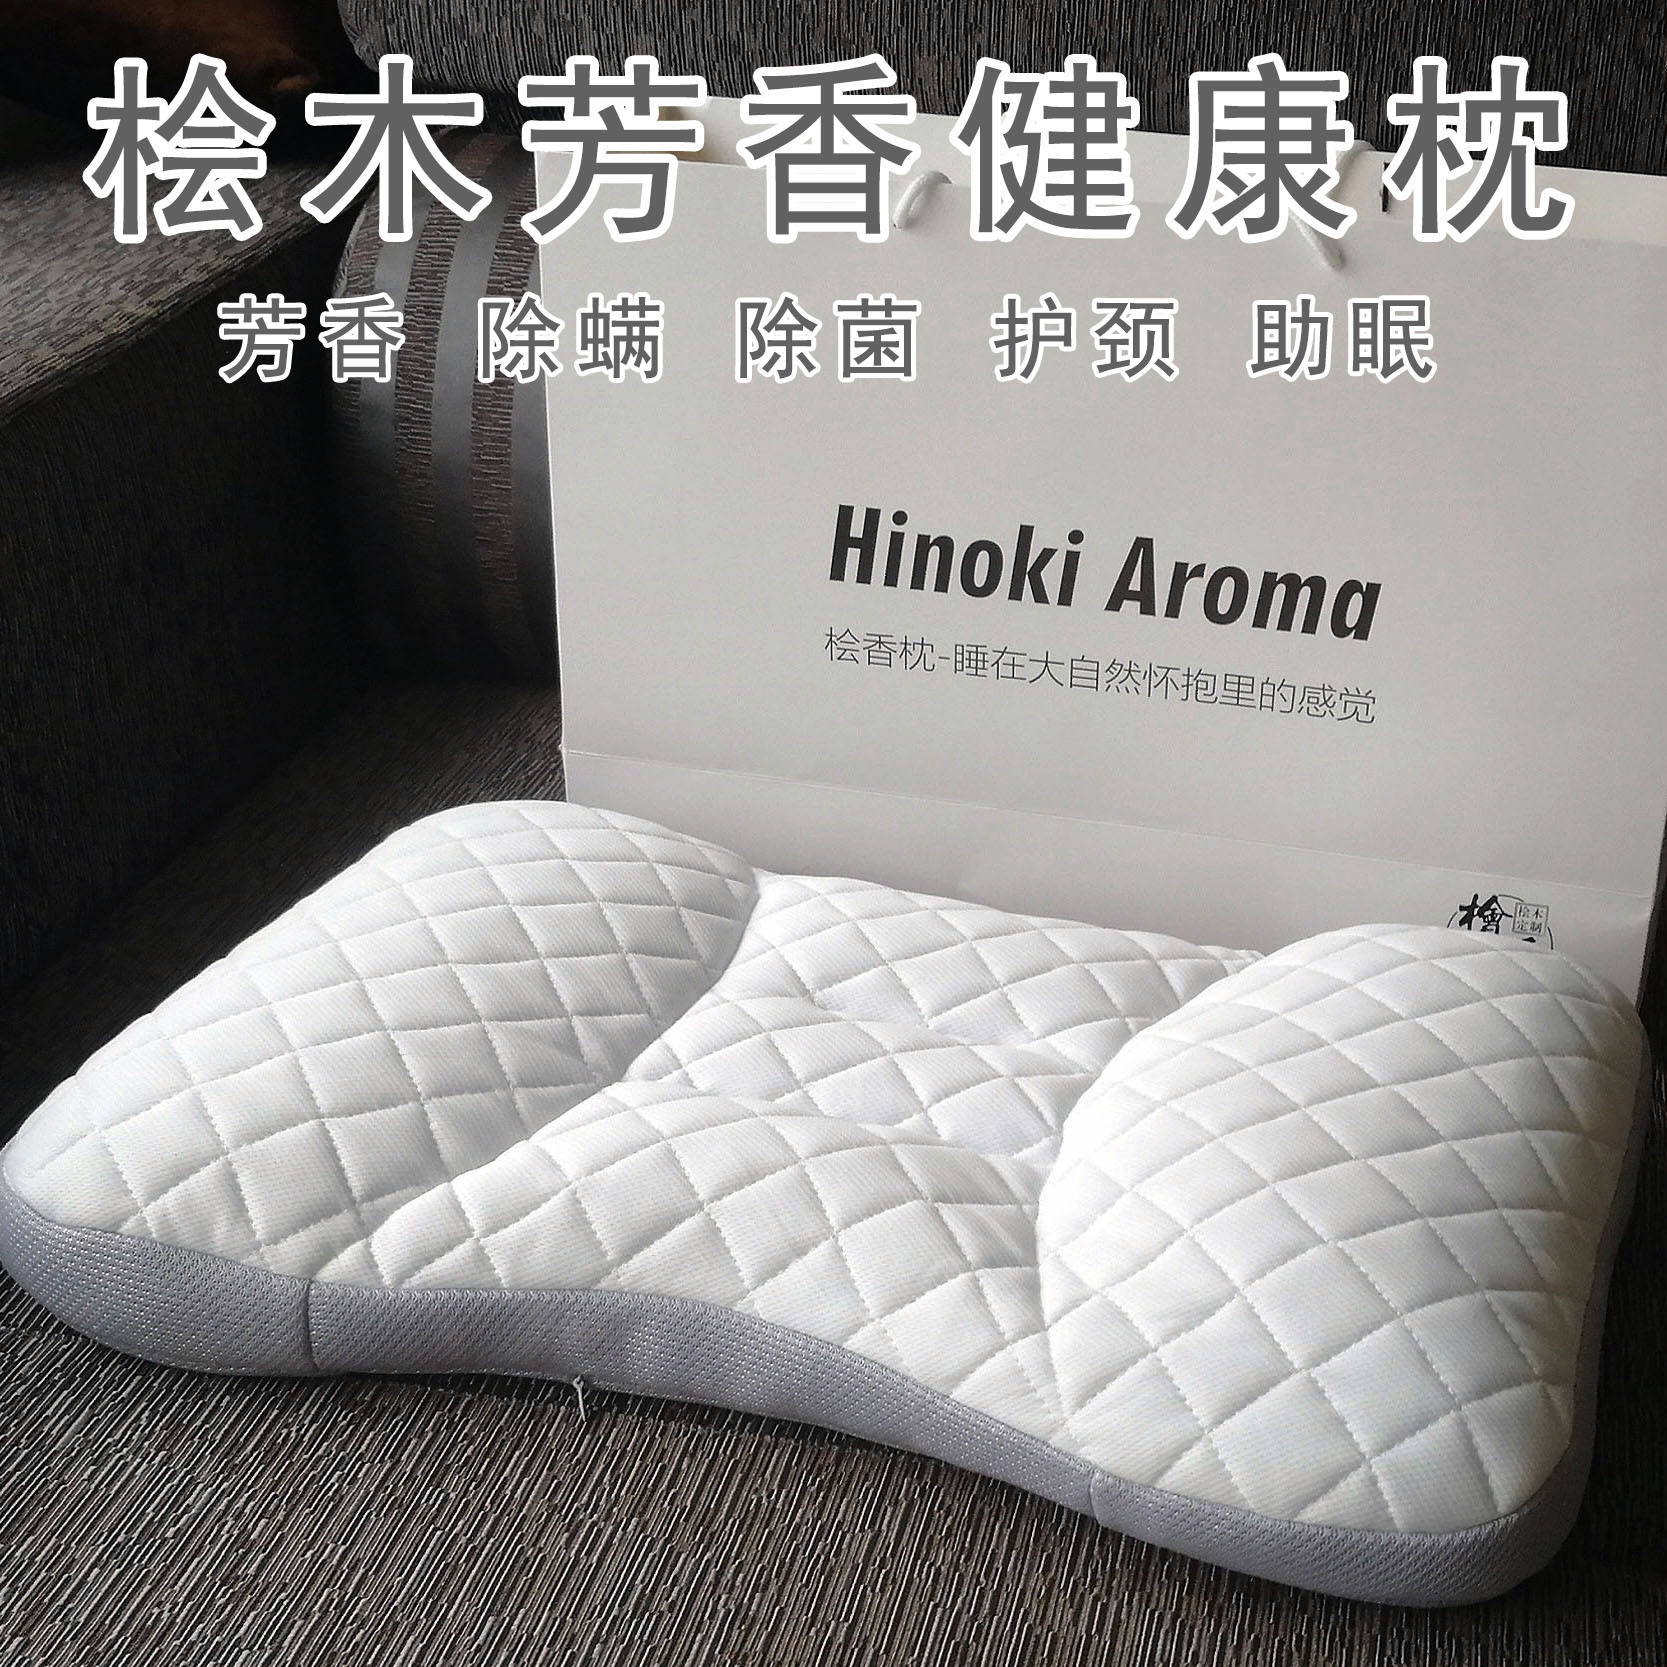 日本桧木芳香健康枕头hinoki aroma桧香枕芯单人护颈成人学生